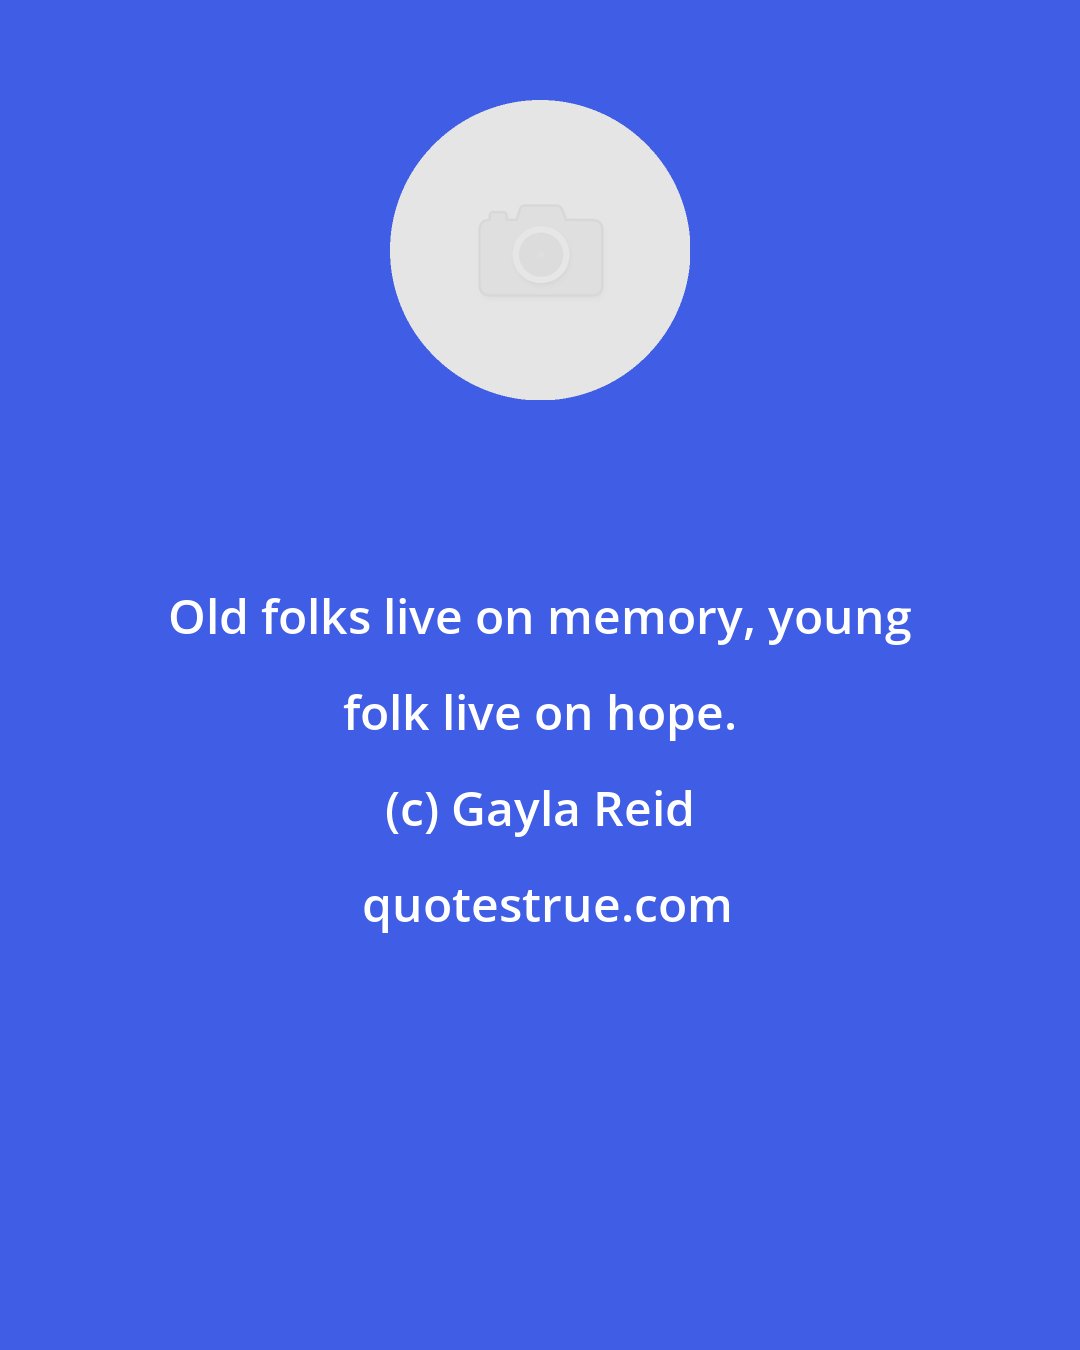 Gayla Reid: Old folks live on memory, young folk live on hope.